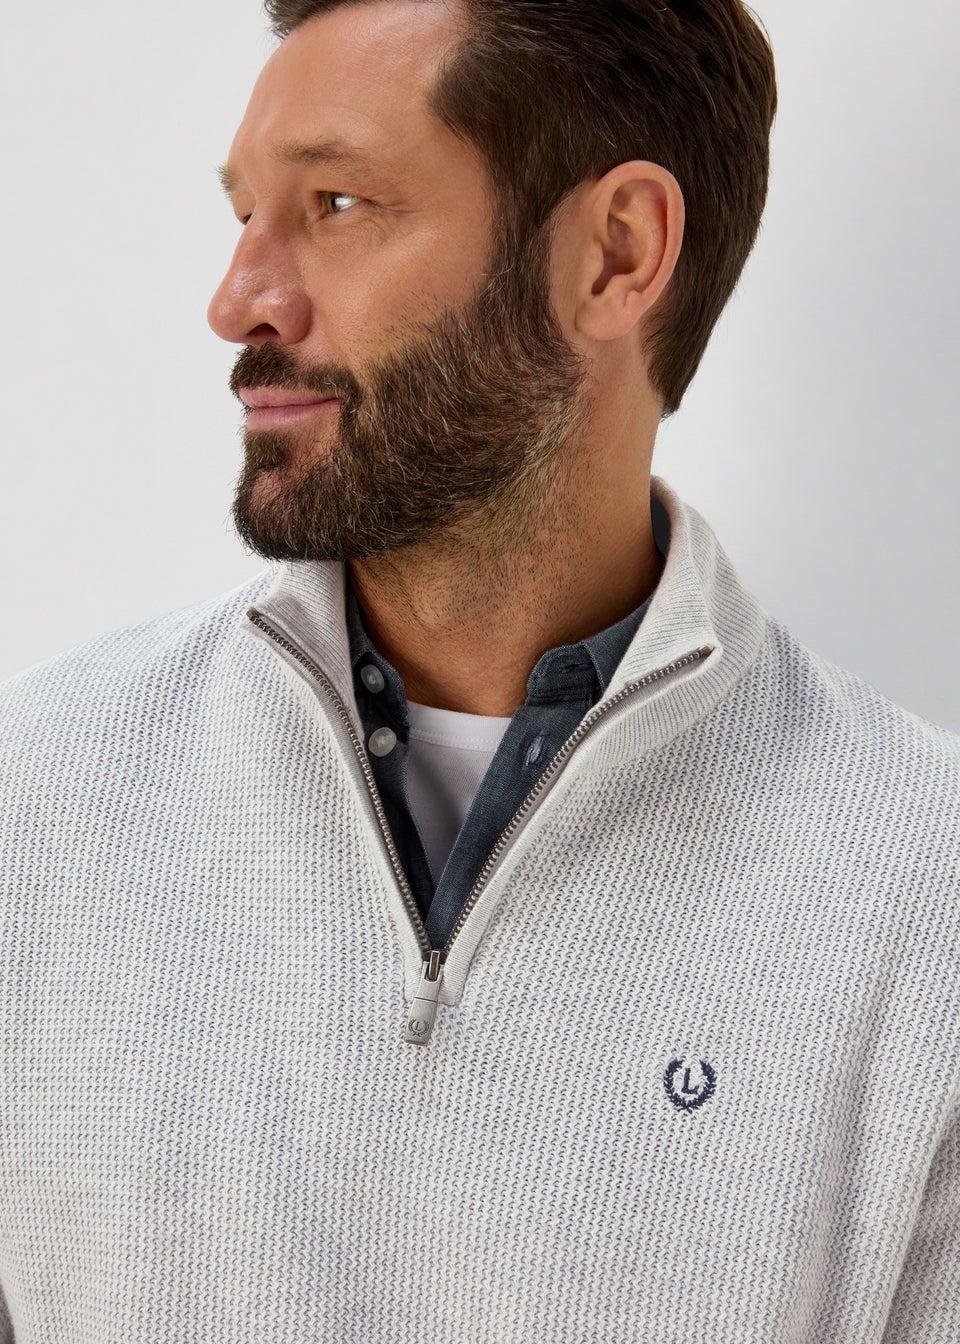 Lincoln Grey 1/4 Zip Sweatshirt